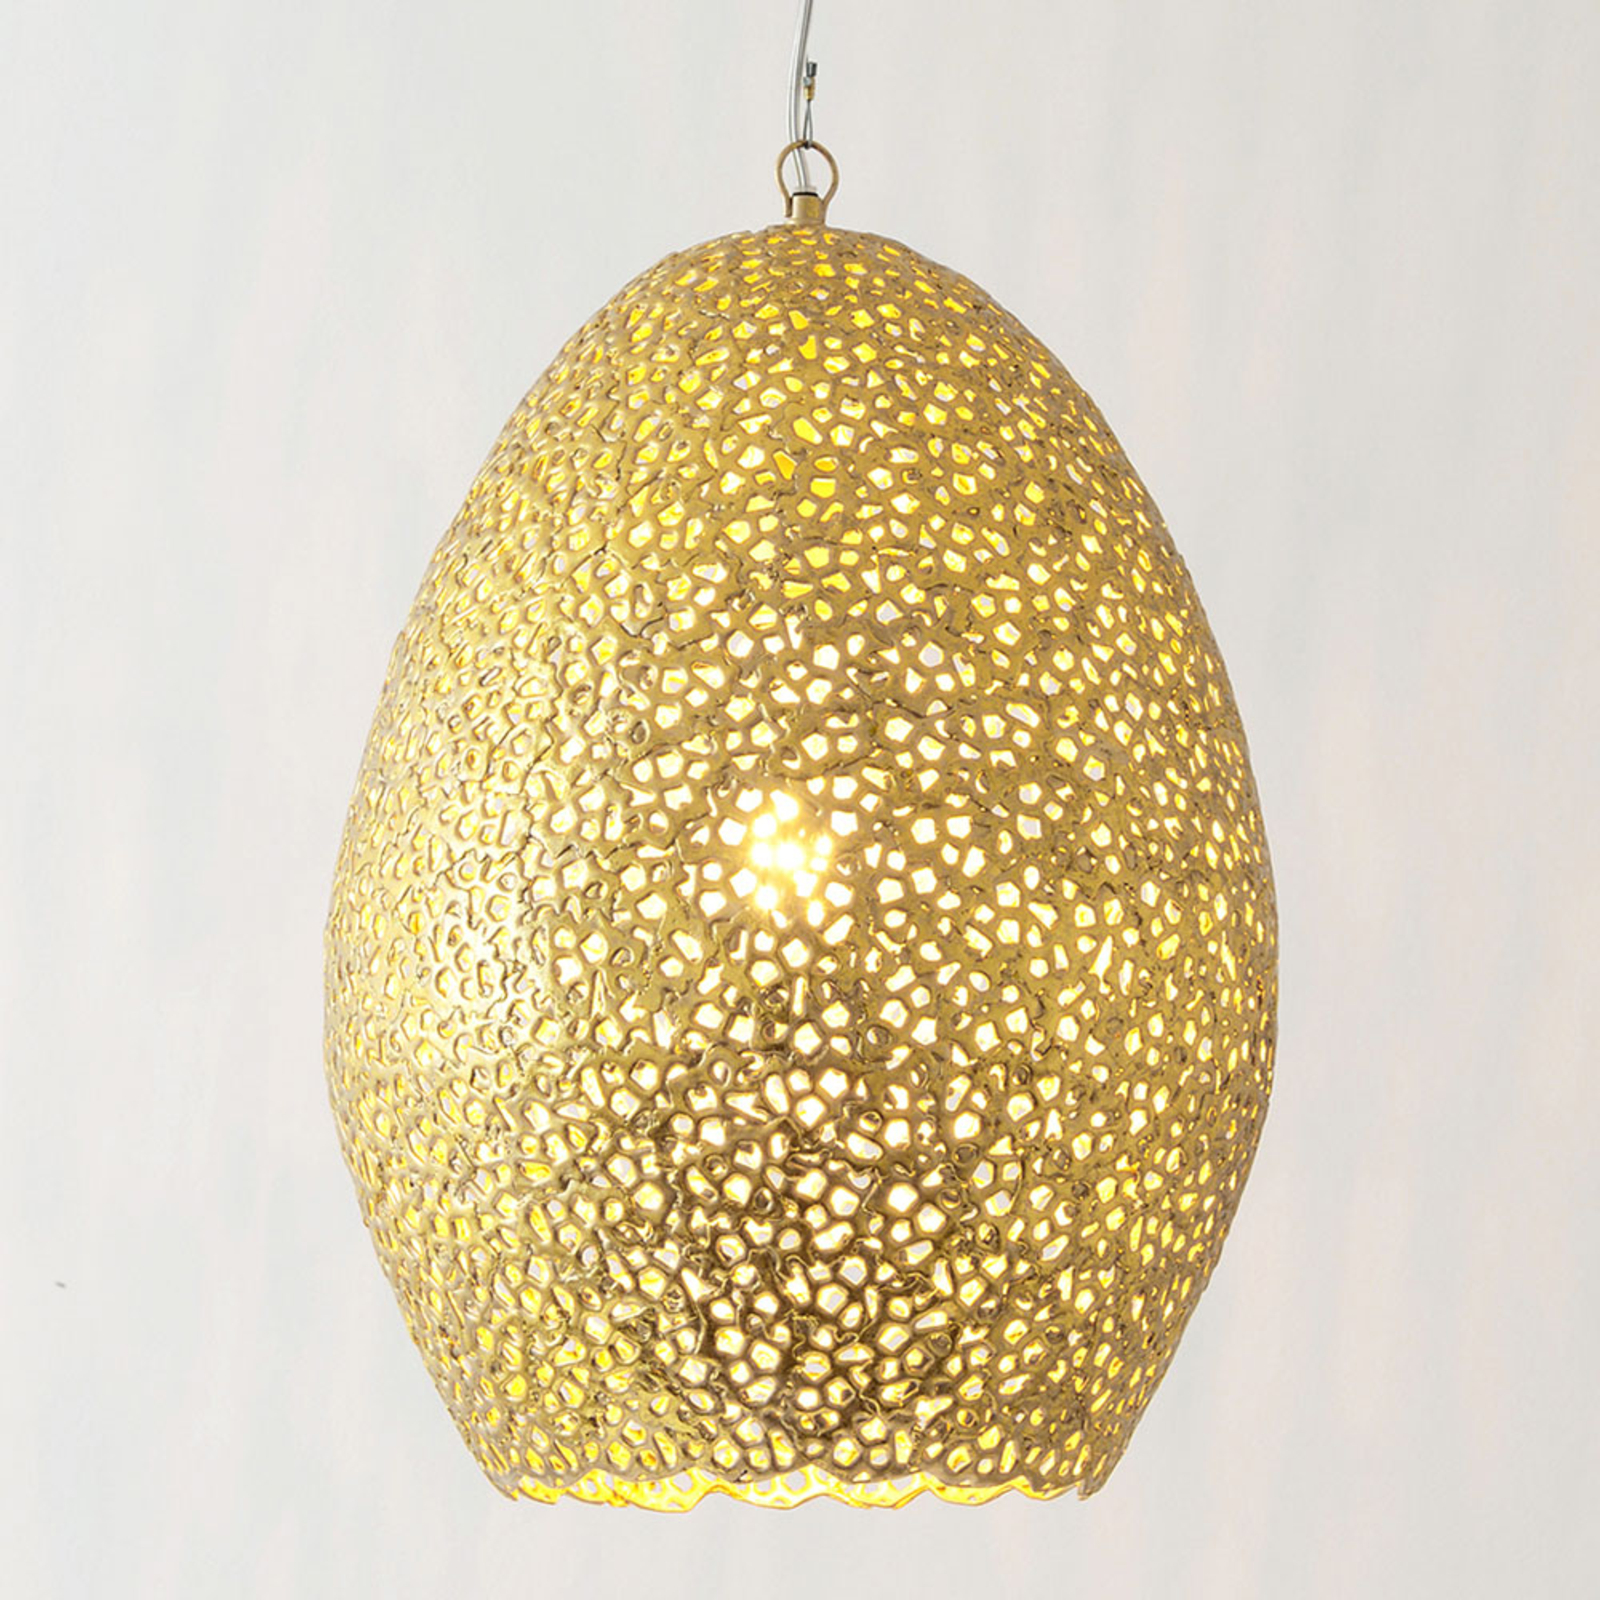 Závěsné svítidlo Cavalliere, zlatá barva, Ø 34 cm